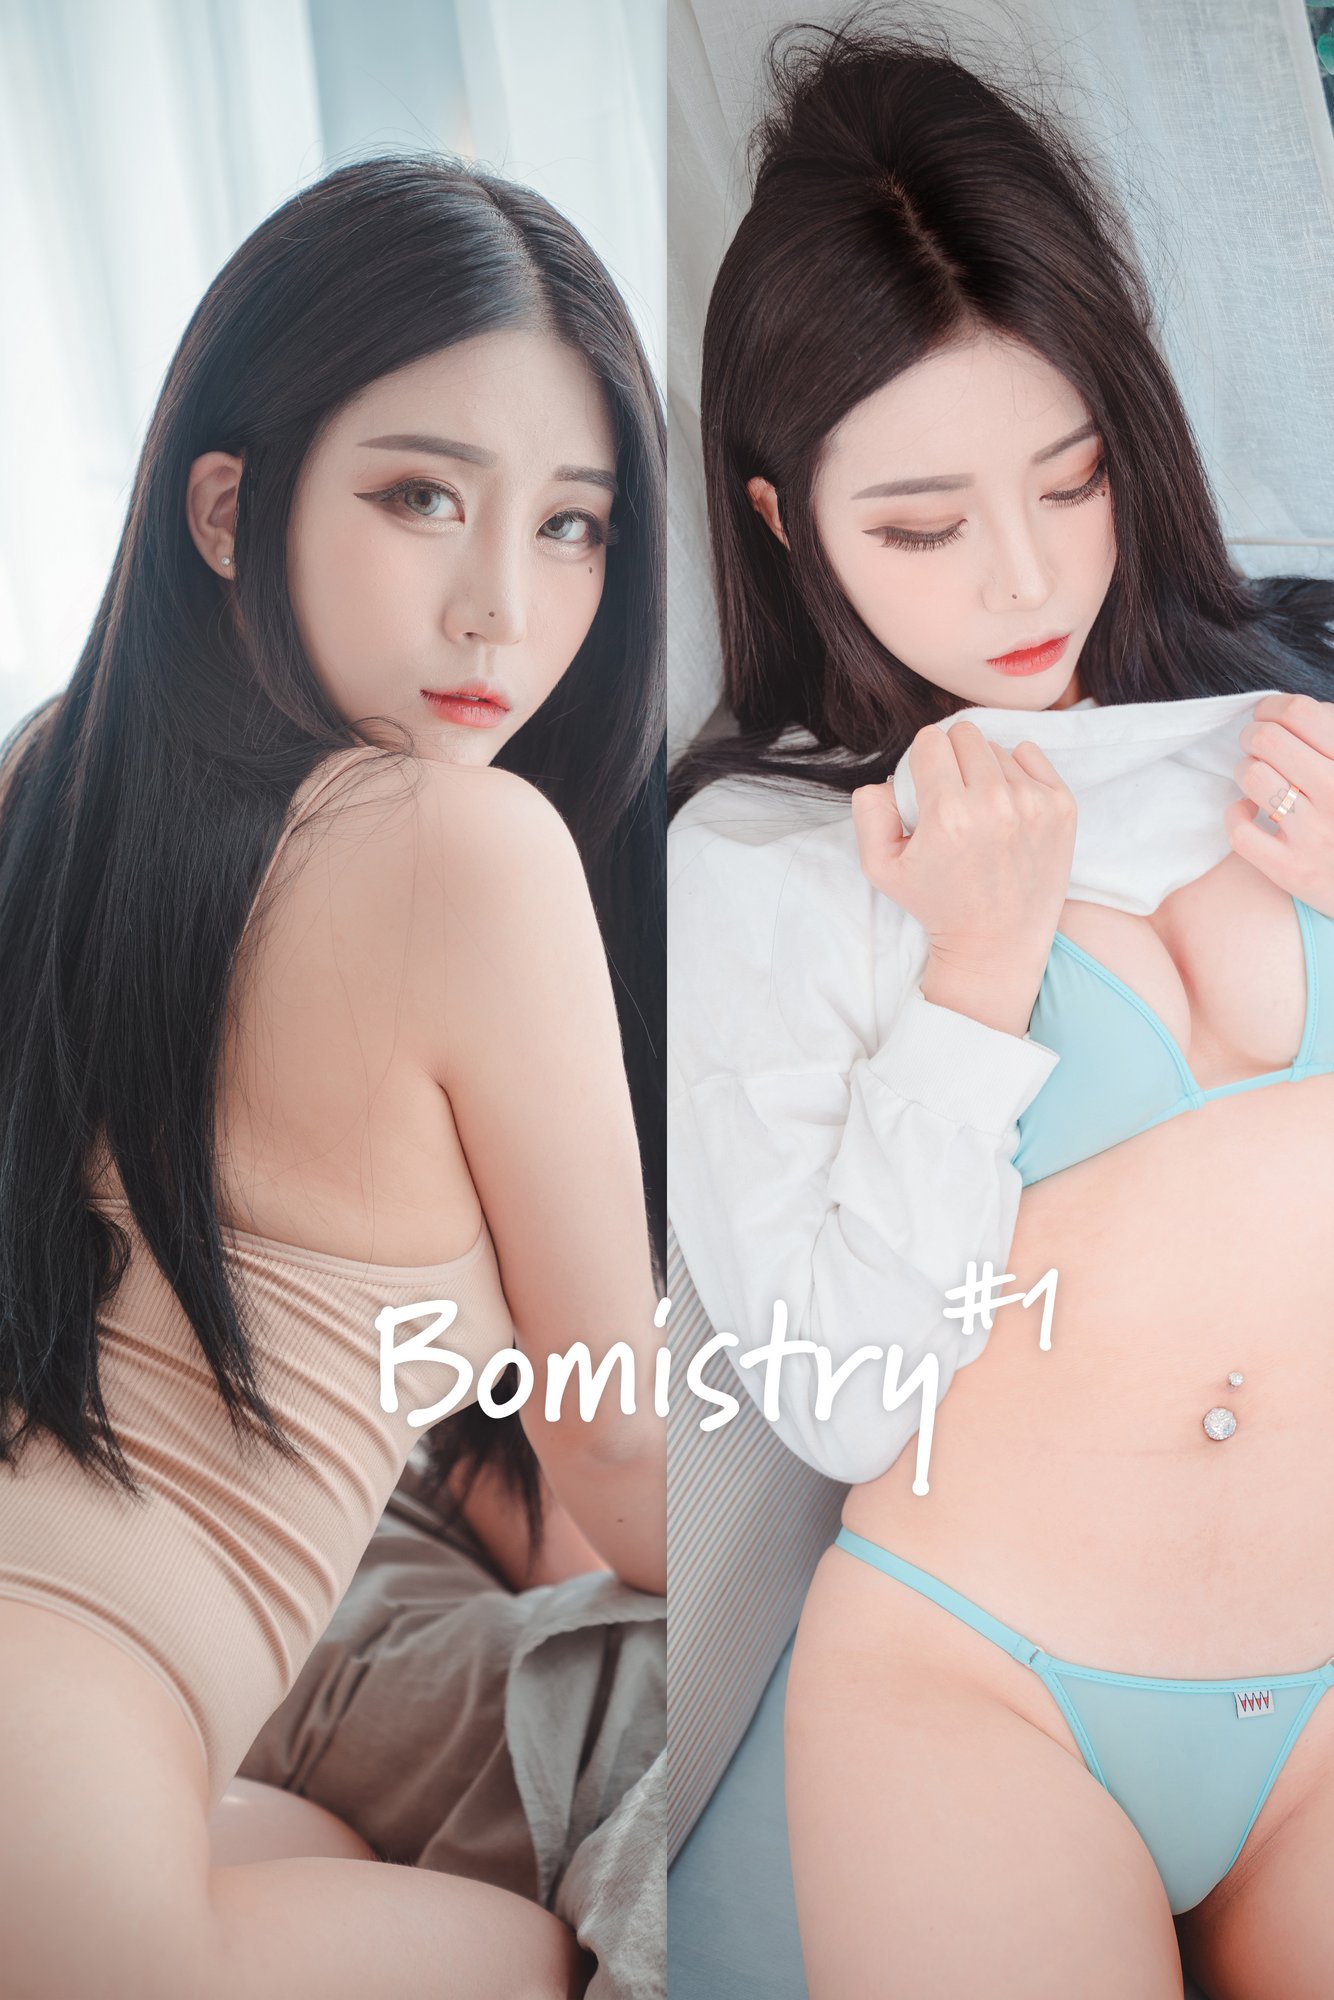 [DJAWA] Bomi - Bomistry #1